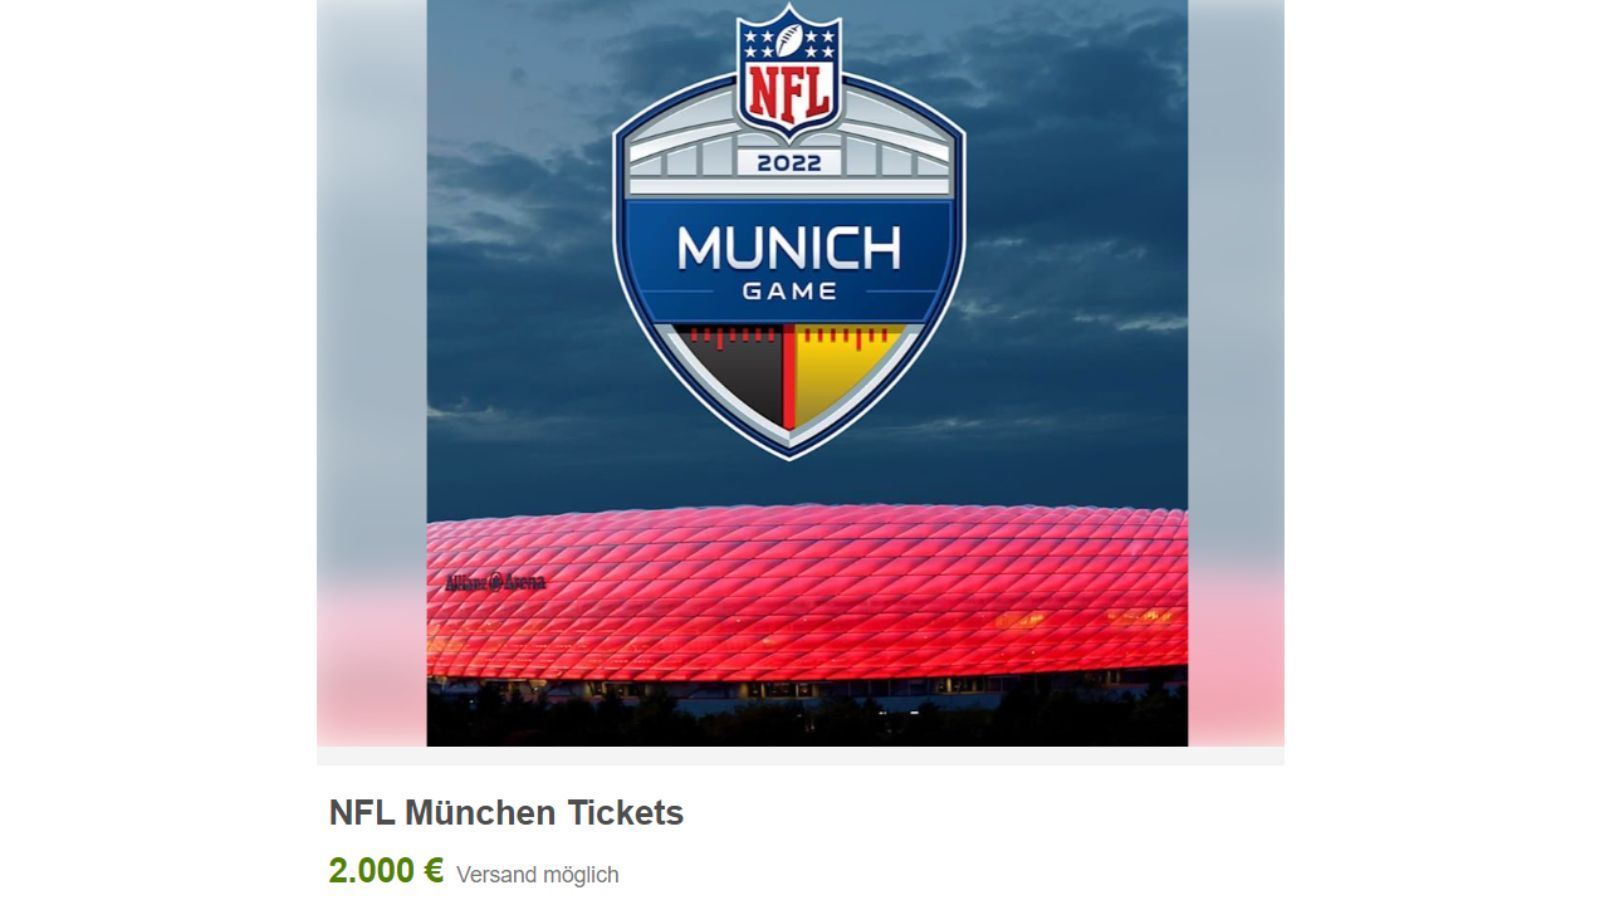 NFL in München eBay löscht Scalper-Angebote von der Plattform